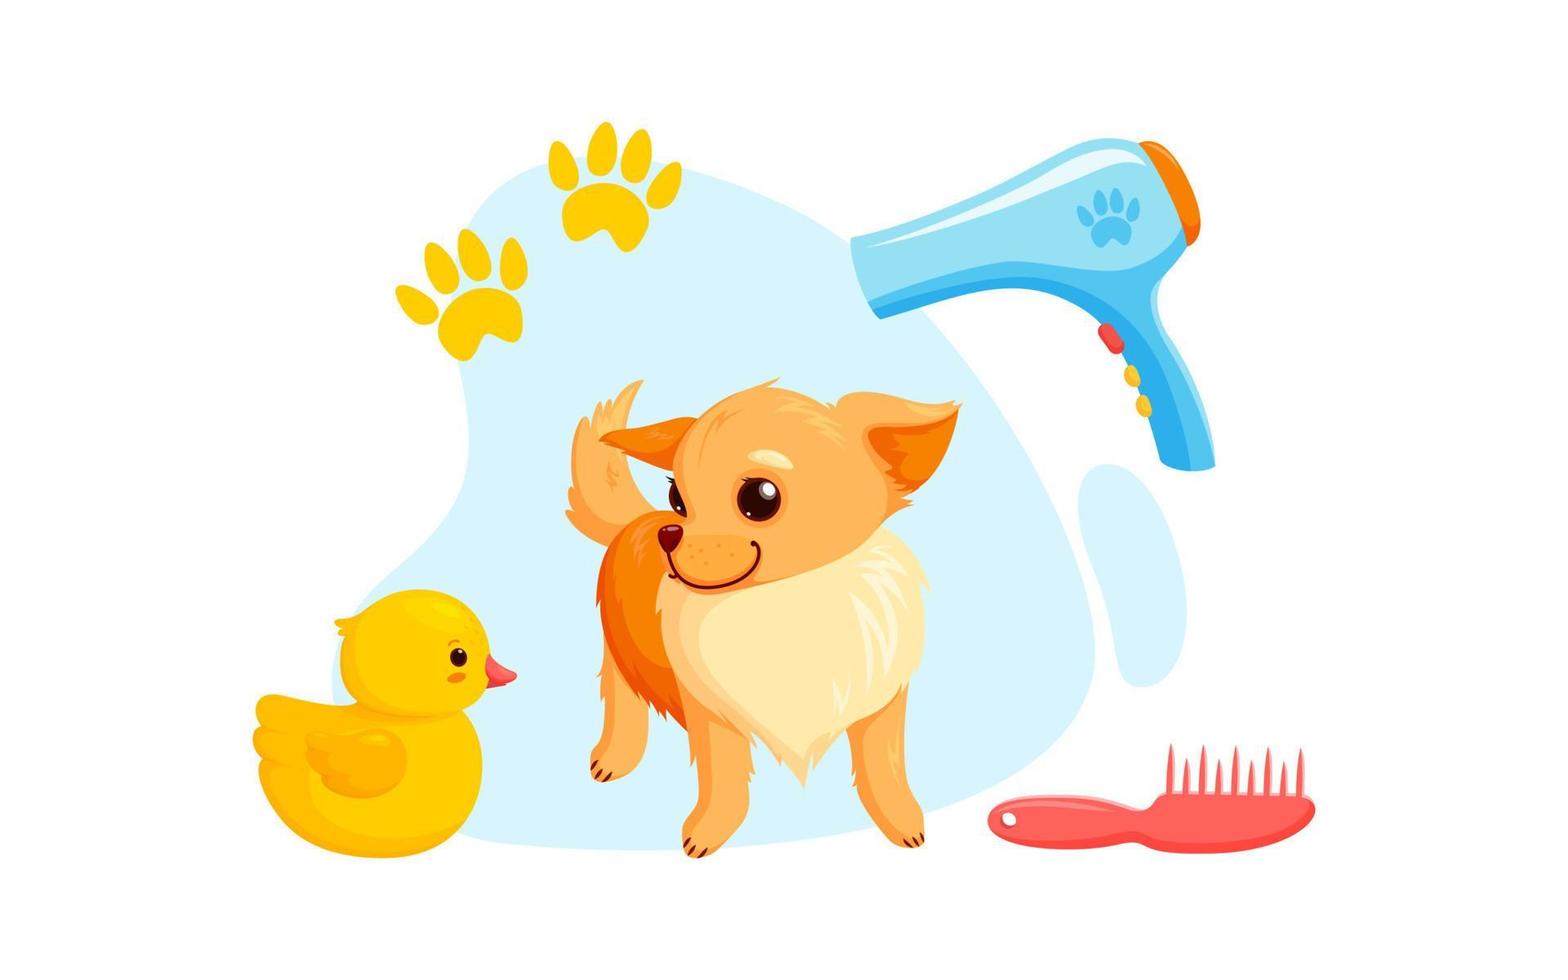 toilettage canin avec séchoir, peignes et canards en caoutchouc. chiot chihuahua ludique en service de toilettage. illustration vectorielle vecteur